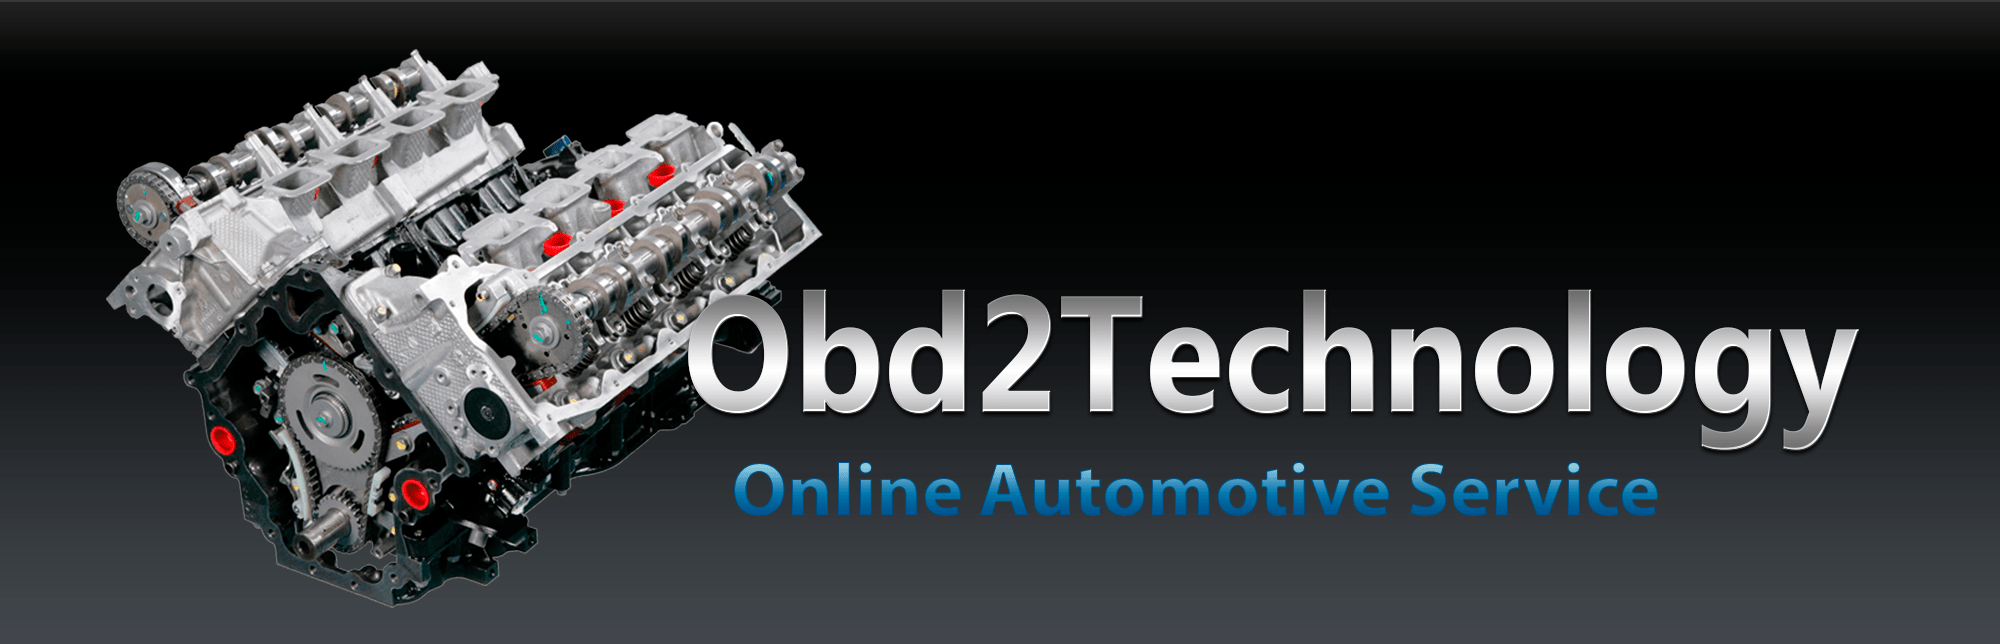 OBD2Technology Shop Wie man sucht